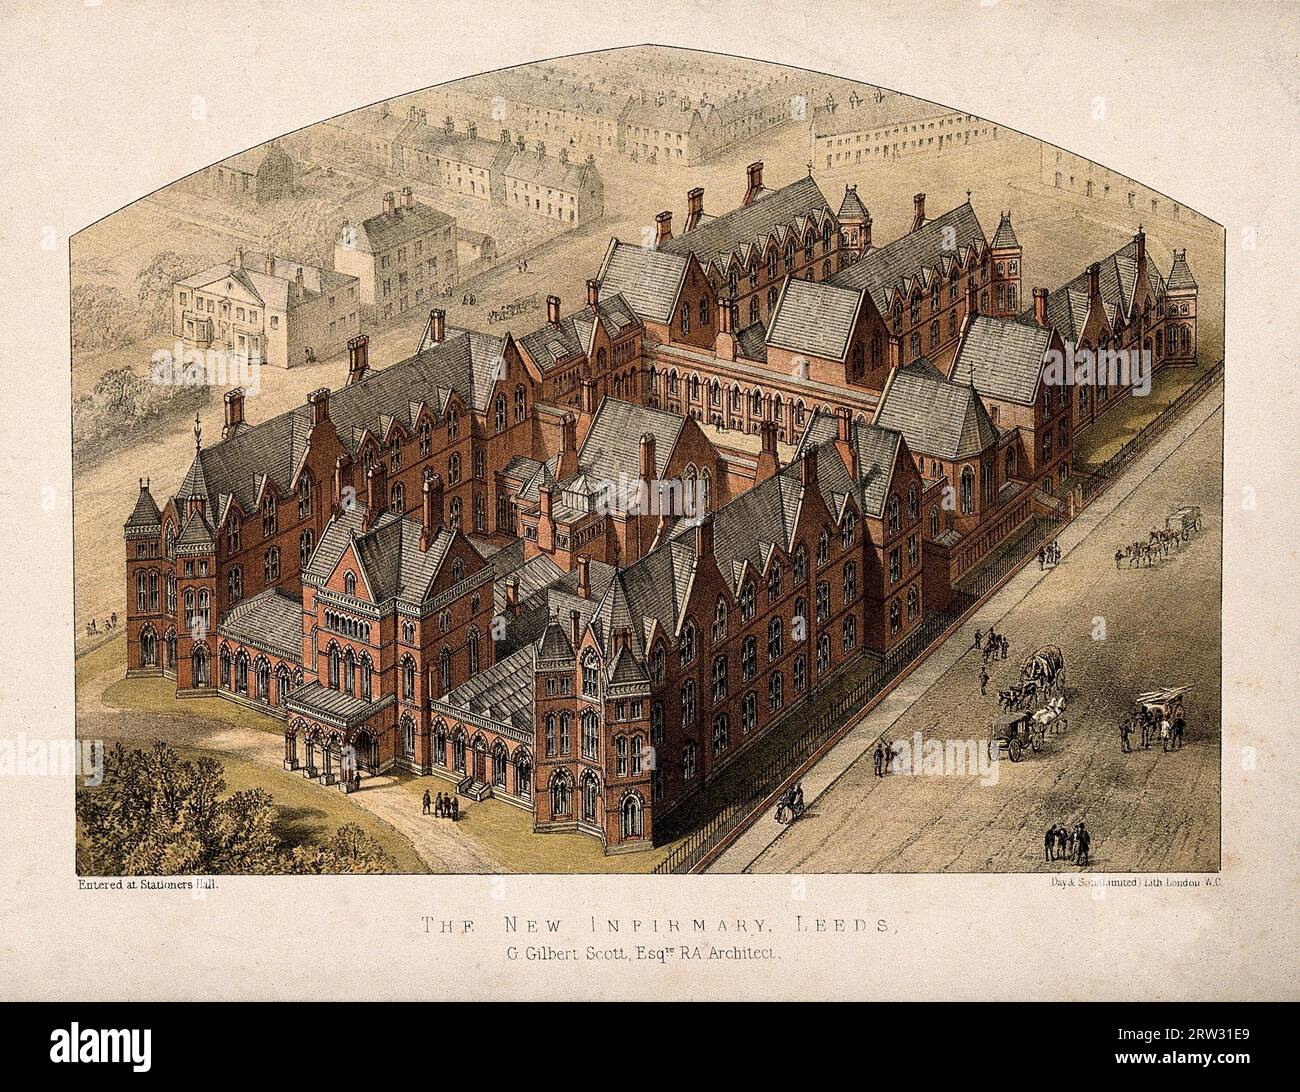 New Infirmary, Leeds, Yorkshire: Aus der Vogelperspektive. Farbige Lithographie nach George Gilbert Scott, 1864 Stockfoto